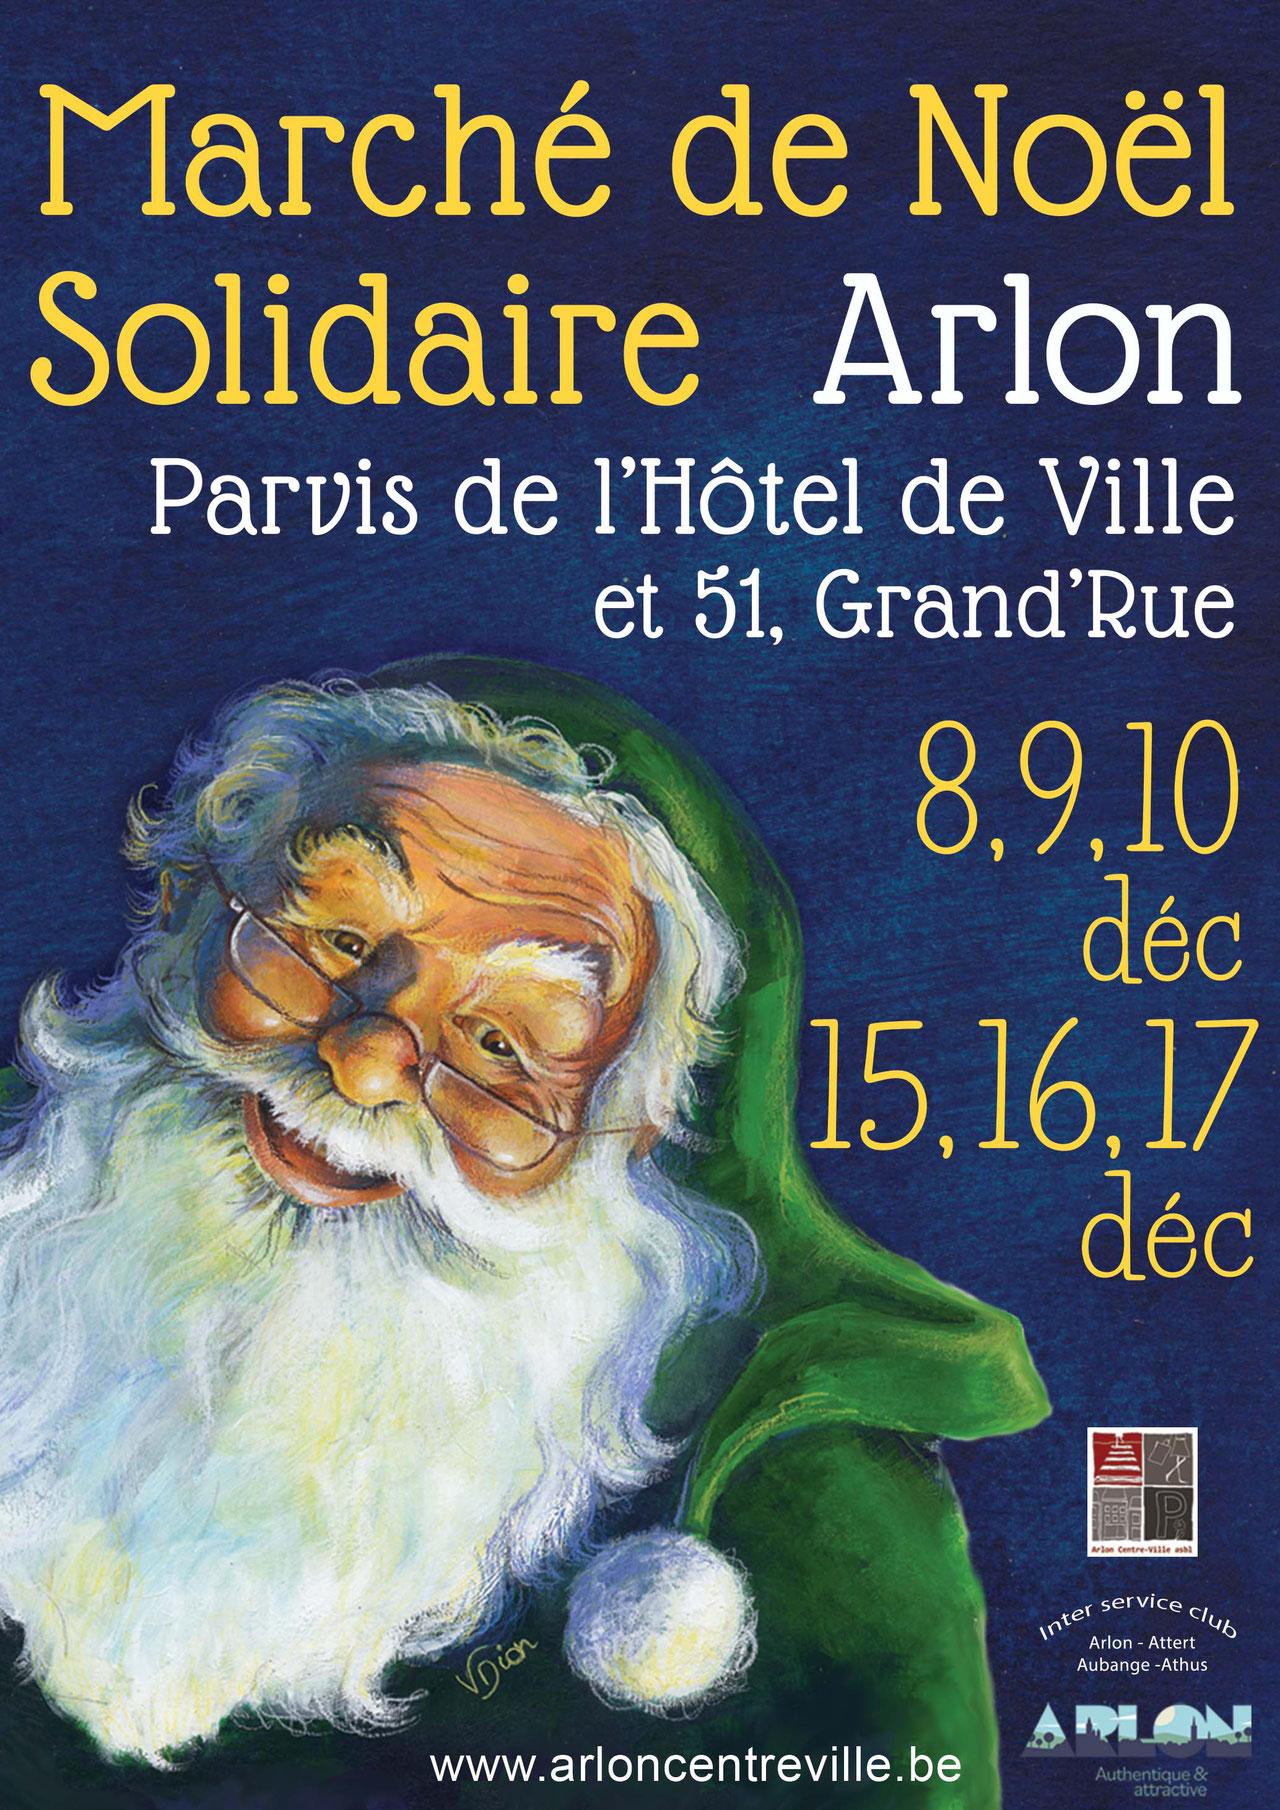 12. Marché de Noël solidaire - Arlon Centre Ville asbl